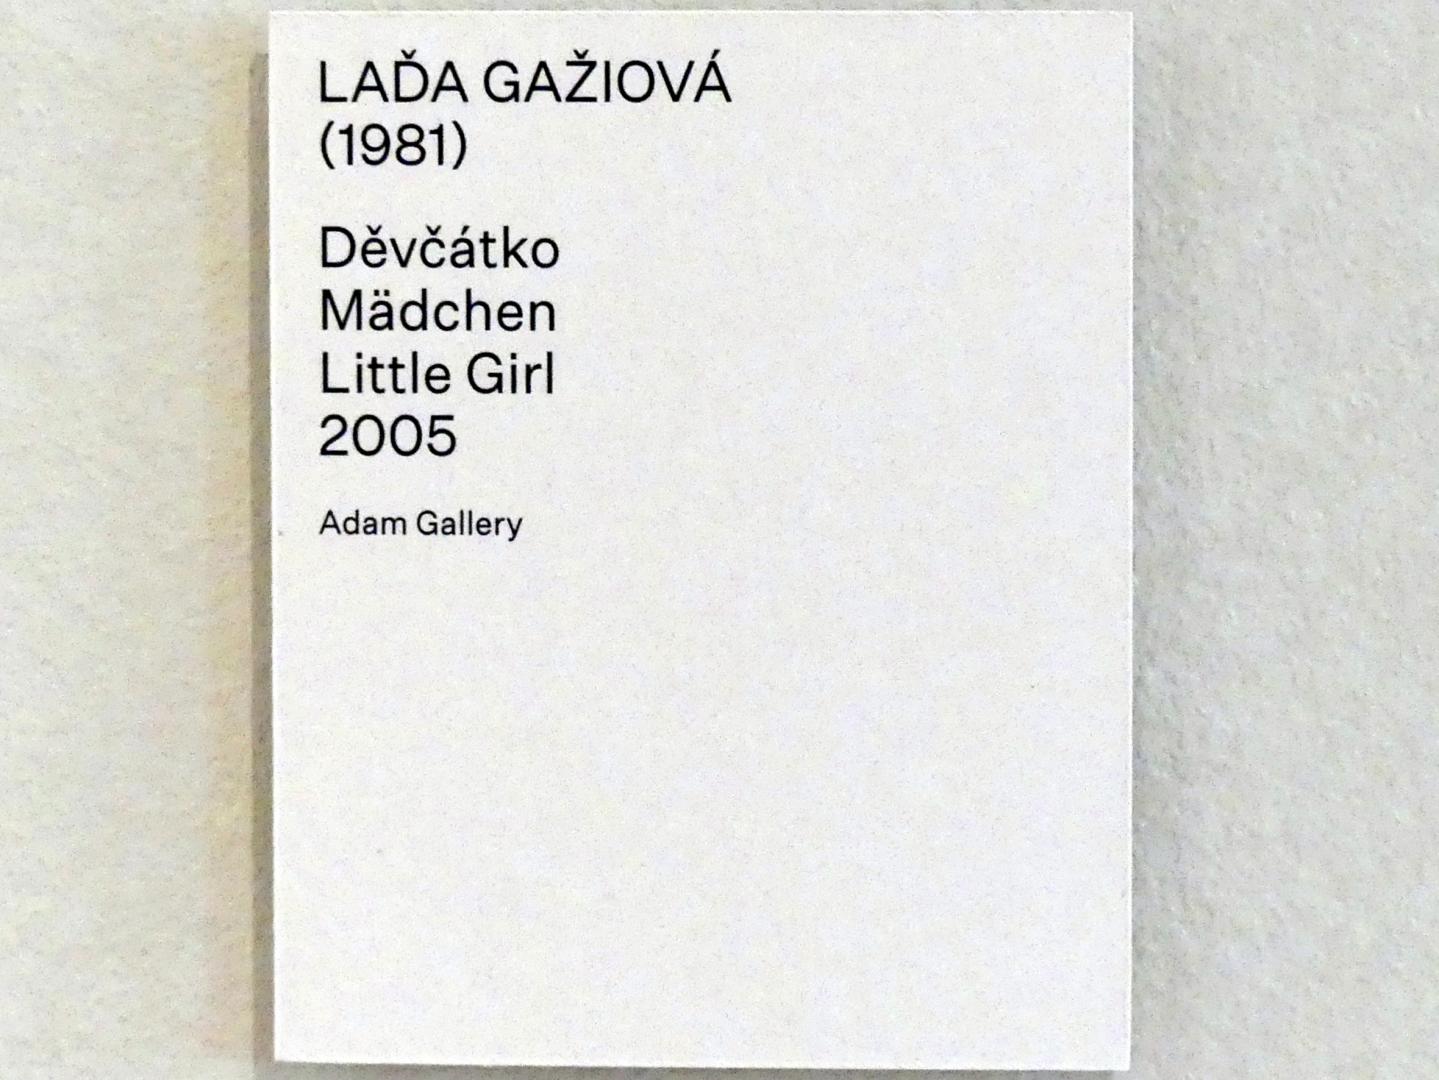 Laďa Gažiová (2005), Mädchen, Prag, Nationalgalerie im Salm-Palast, Ausstellung "Möglichkeiten des Dialogs" vom 02.12.2018-01.12.2019, Saal 17, 2005, Bild 2/2